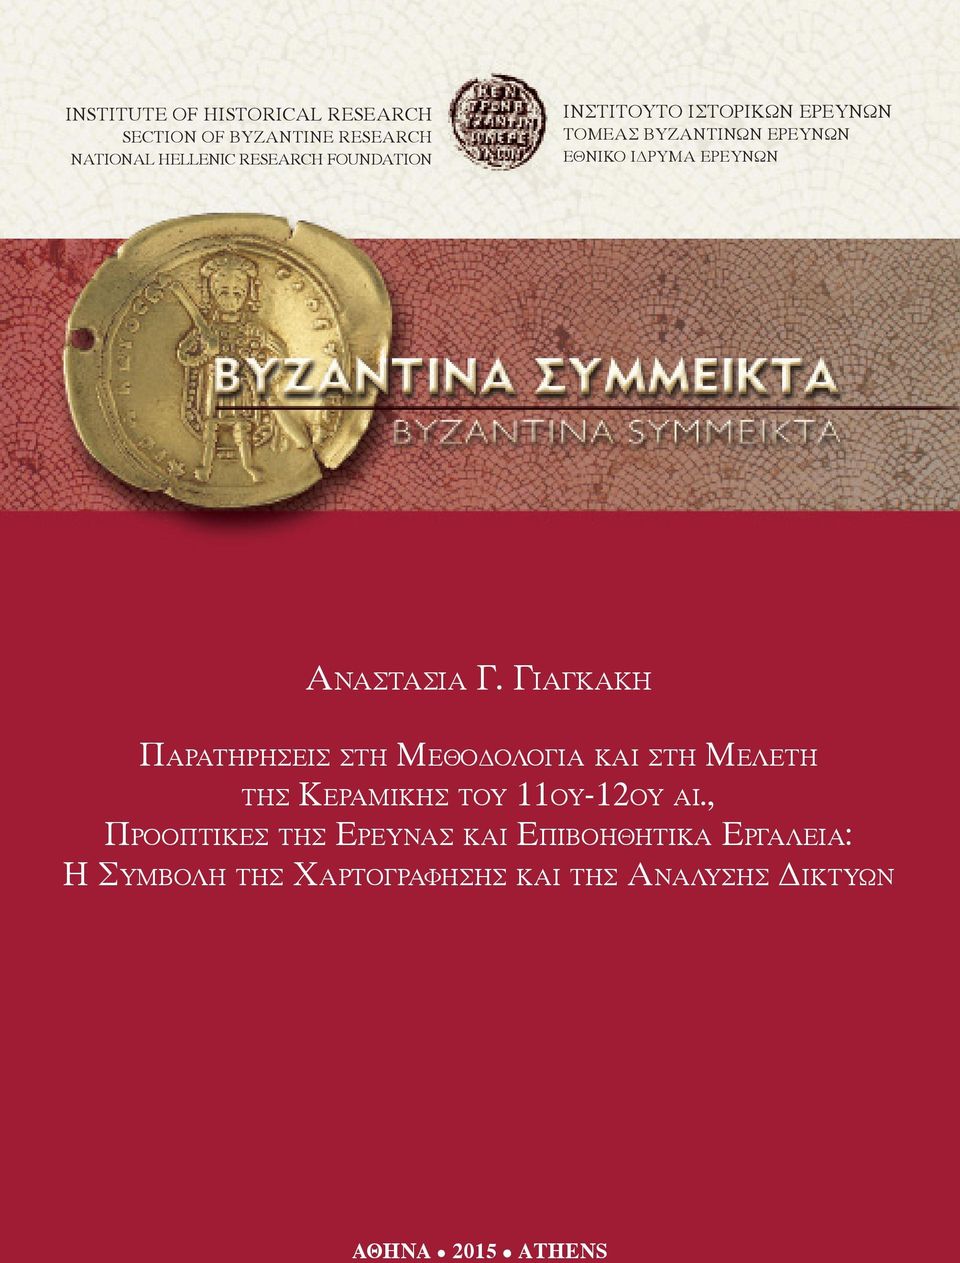 Γιαγκακη The Παρατηρησεισ Geography στη of the Μεθοδολογια Provincial και Administration στη Μελετη of the της Byzantine Κεραμικησ